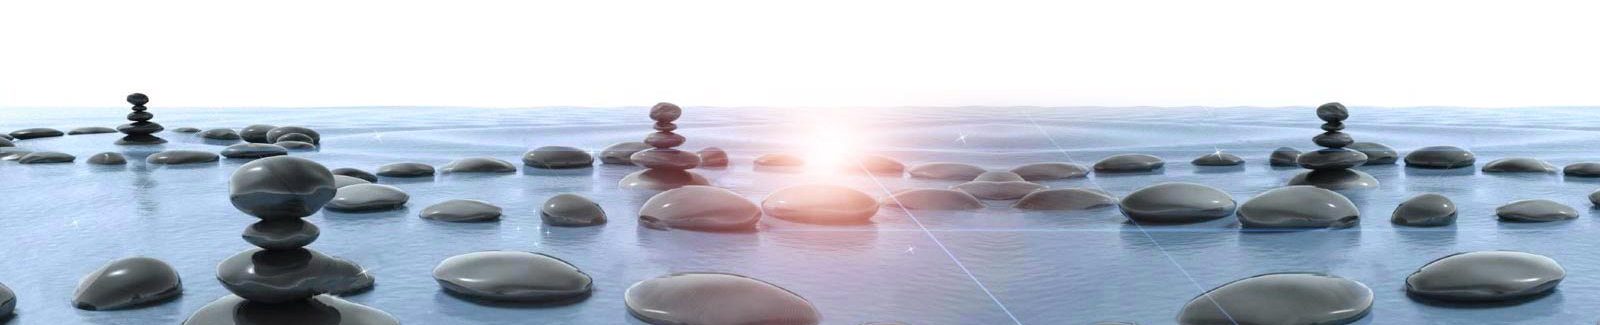 bannière zen le yoga intégral pierres alignées sur l'eau